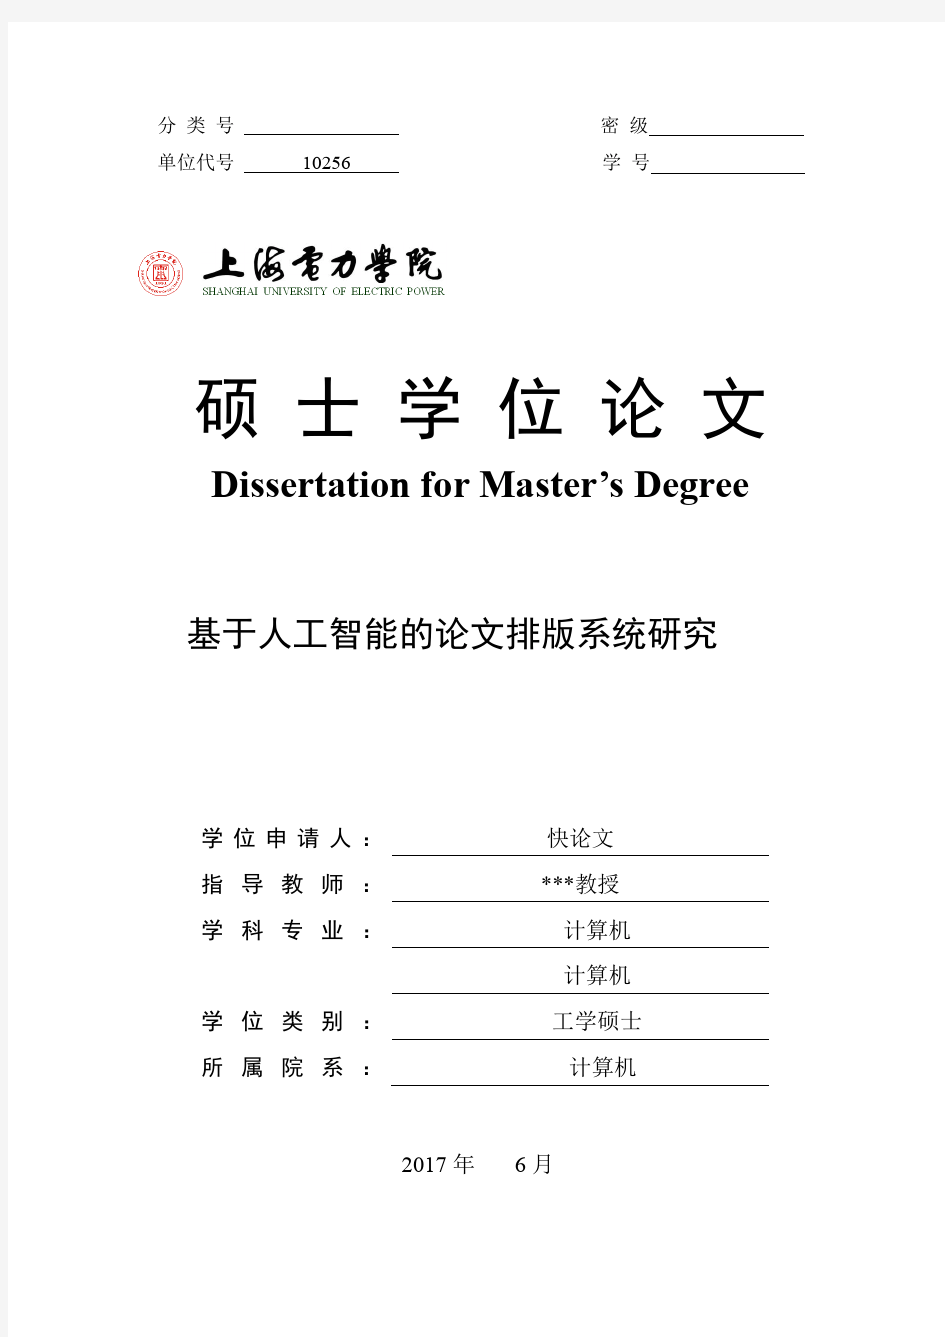 2018年上海电力学院各院系硕士论文格式模板